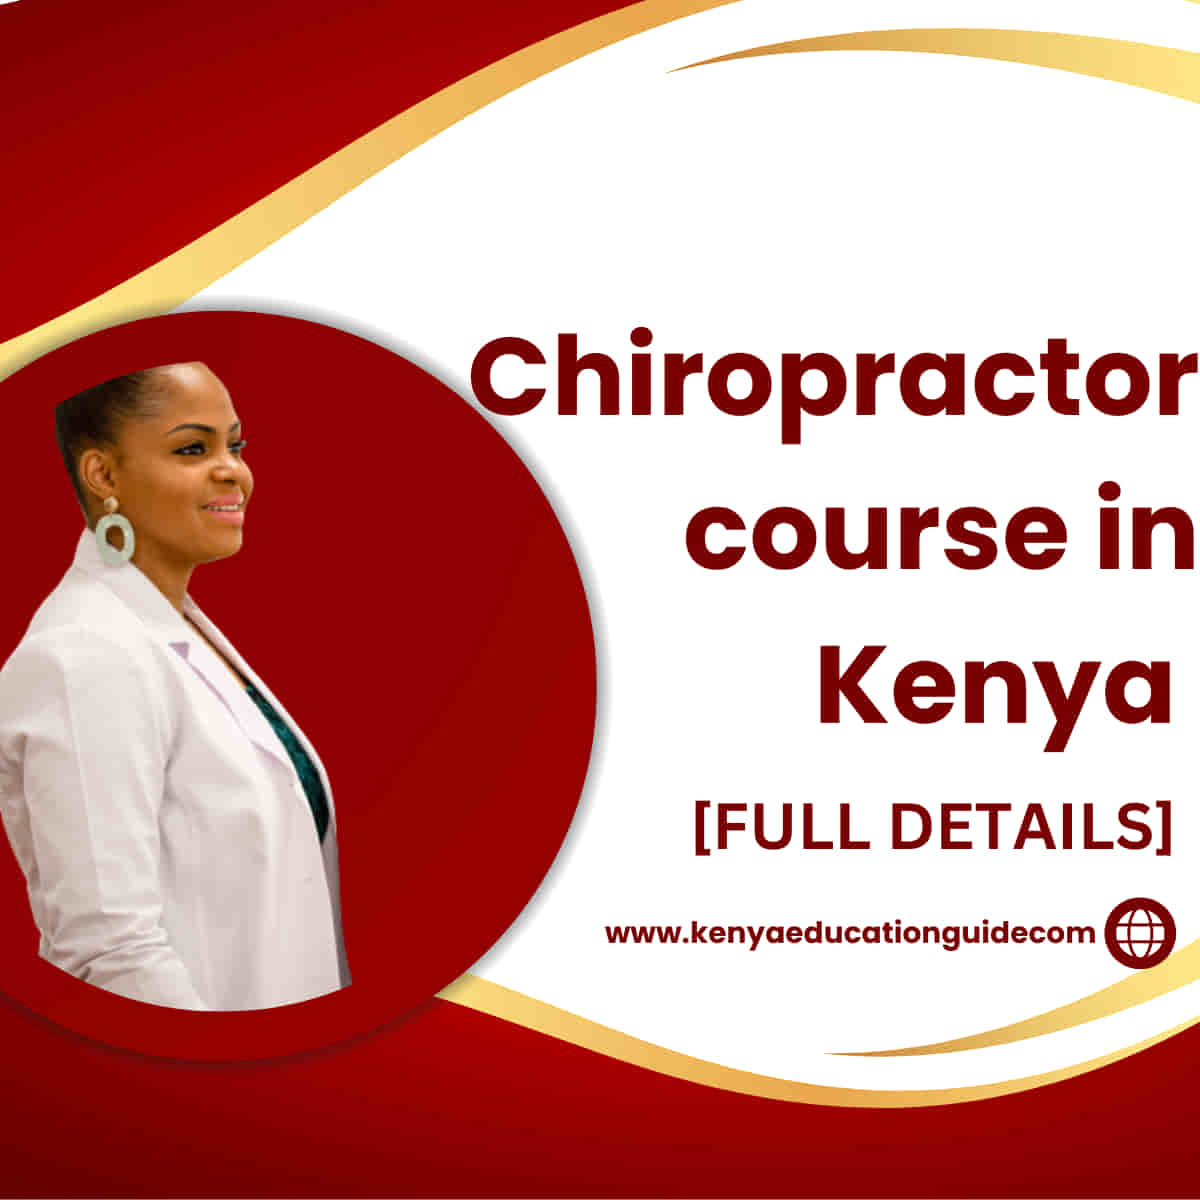 Chiropractor course in Kenya